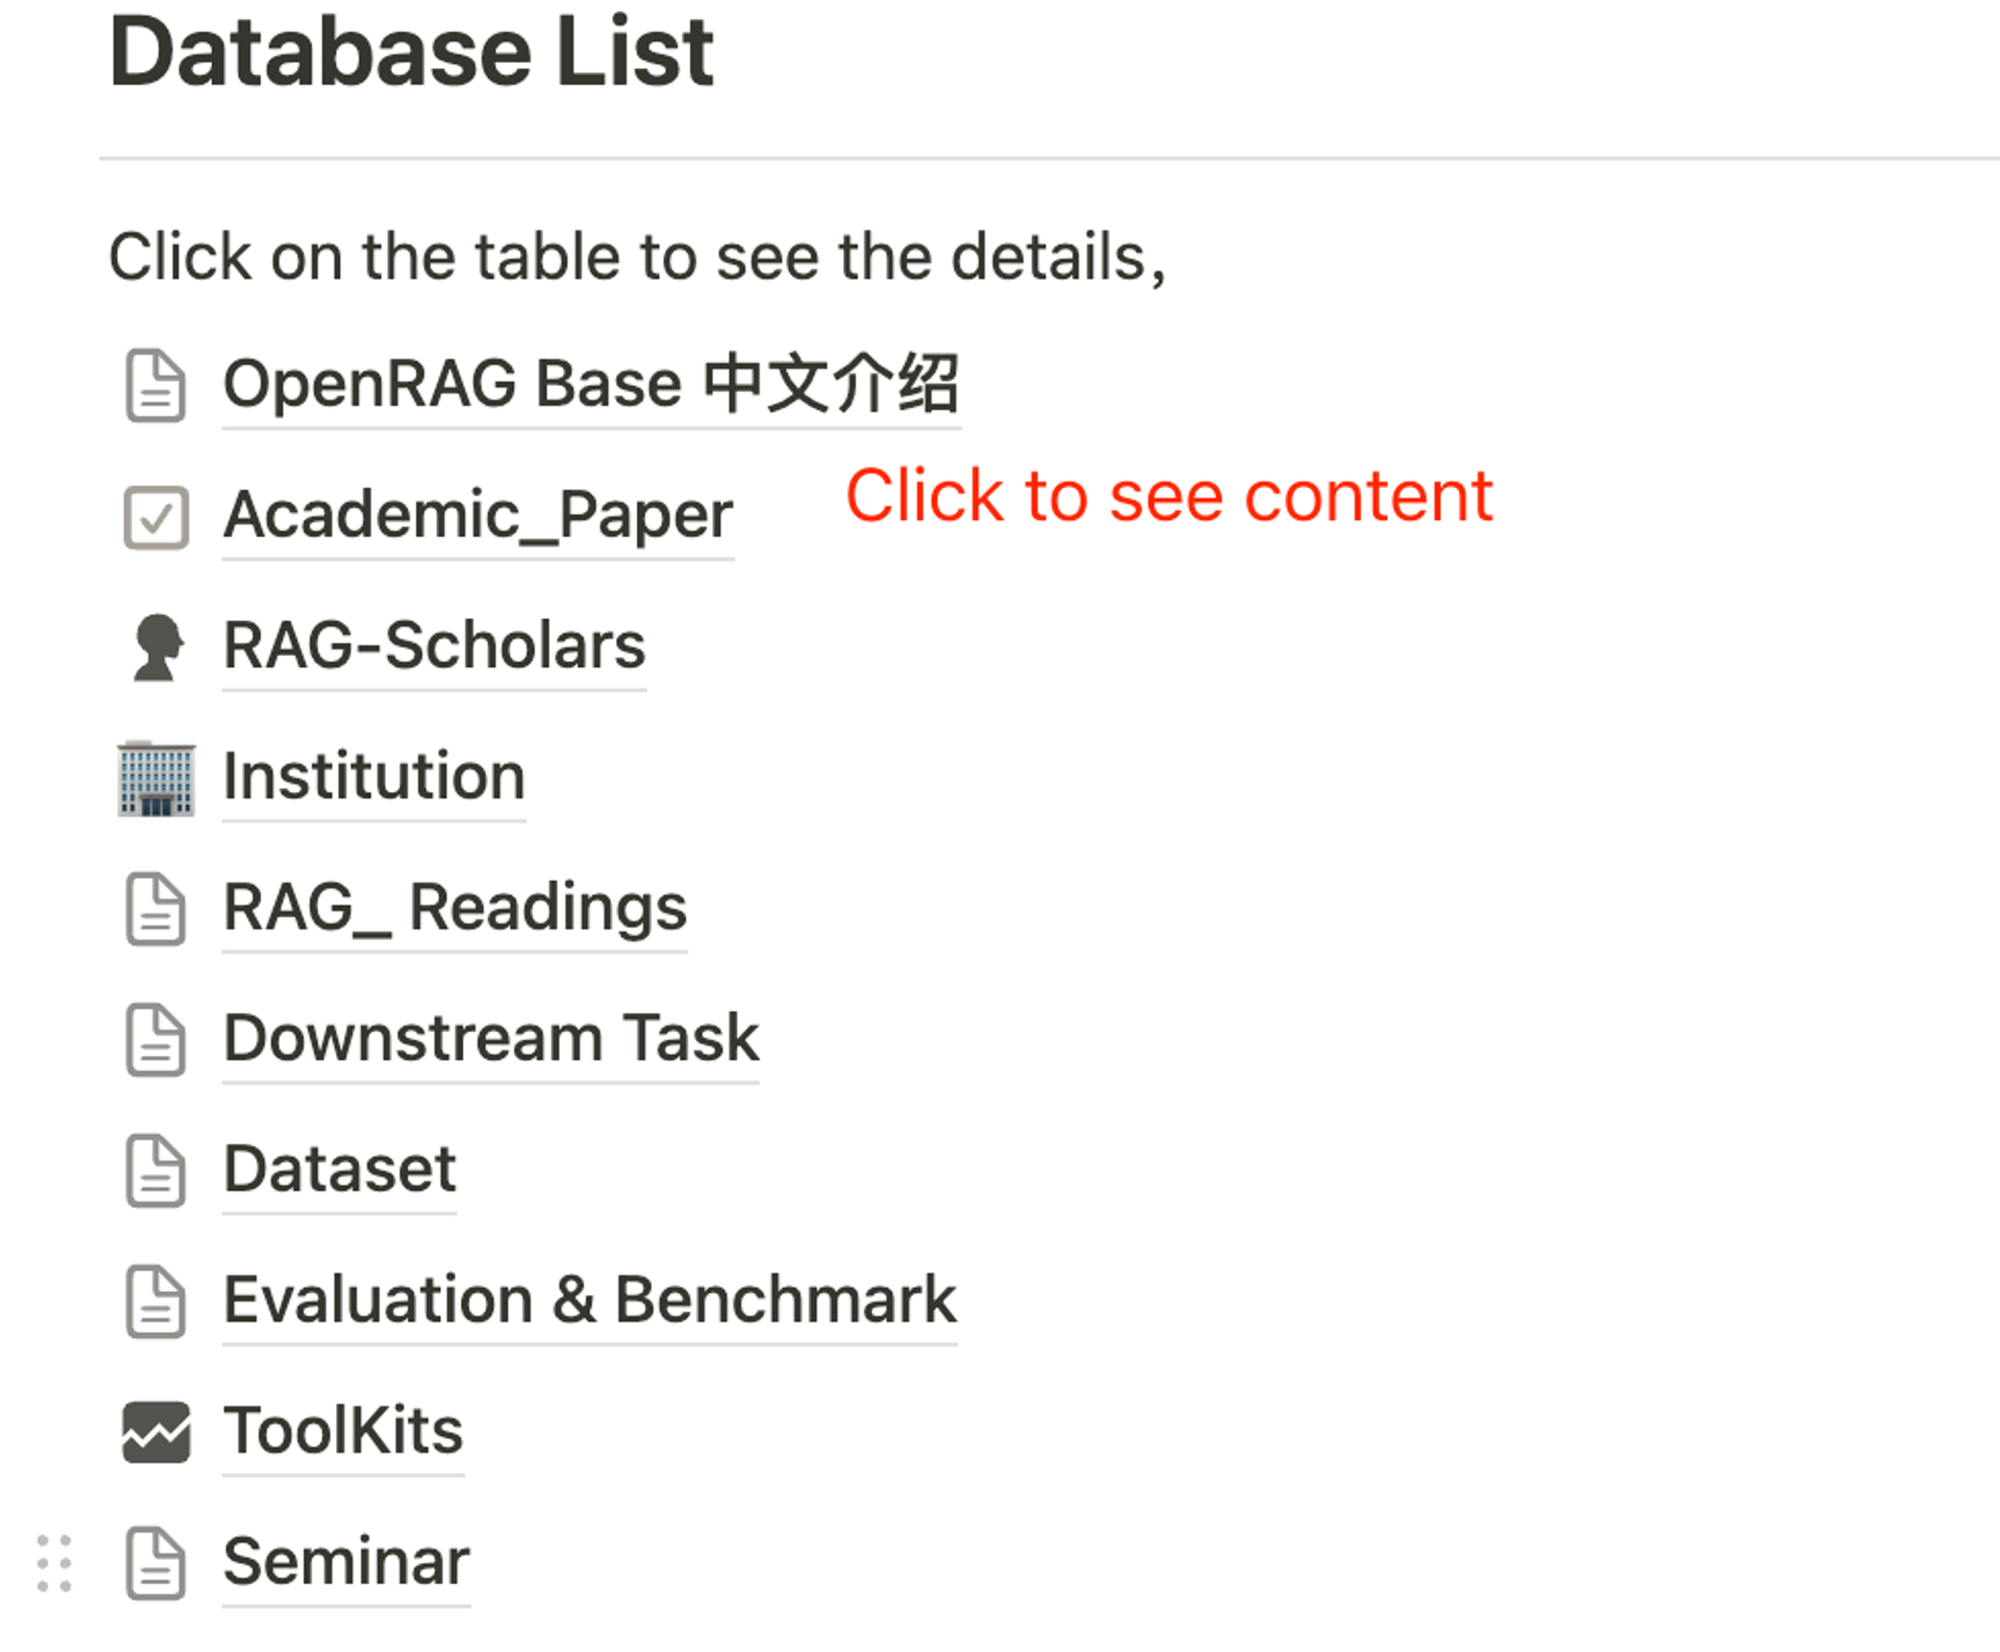 Database List